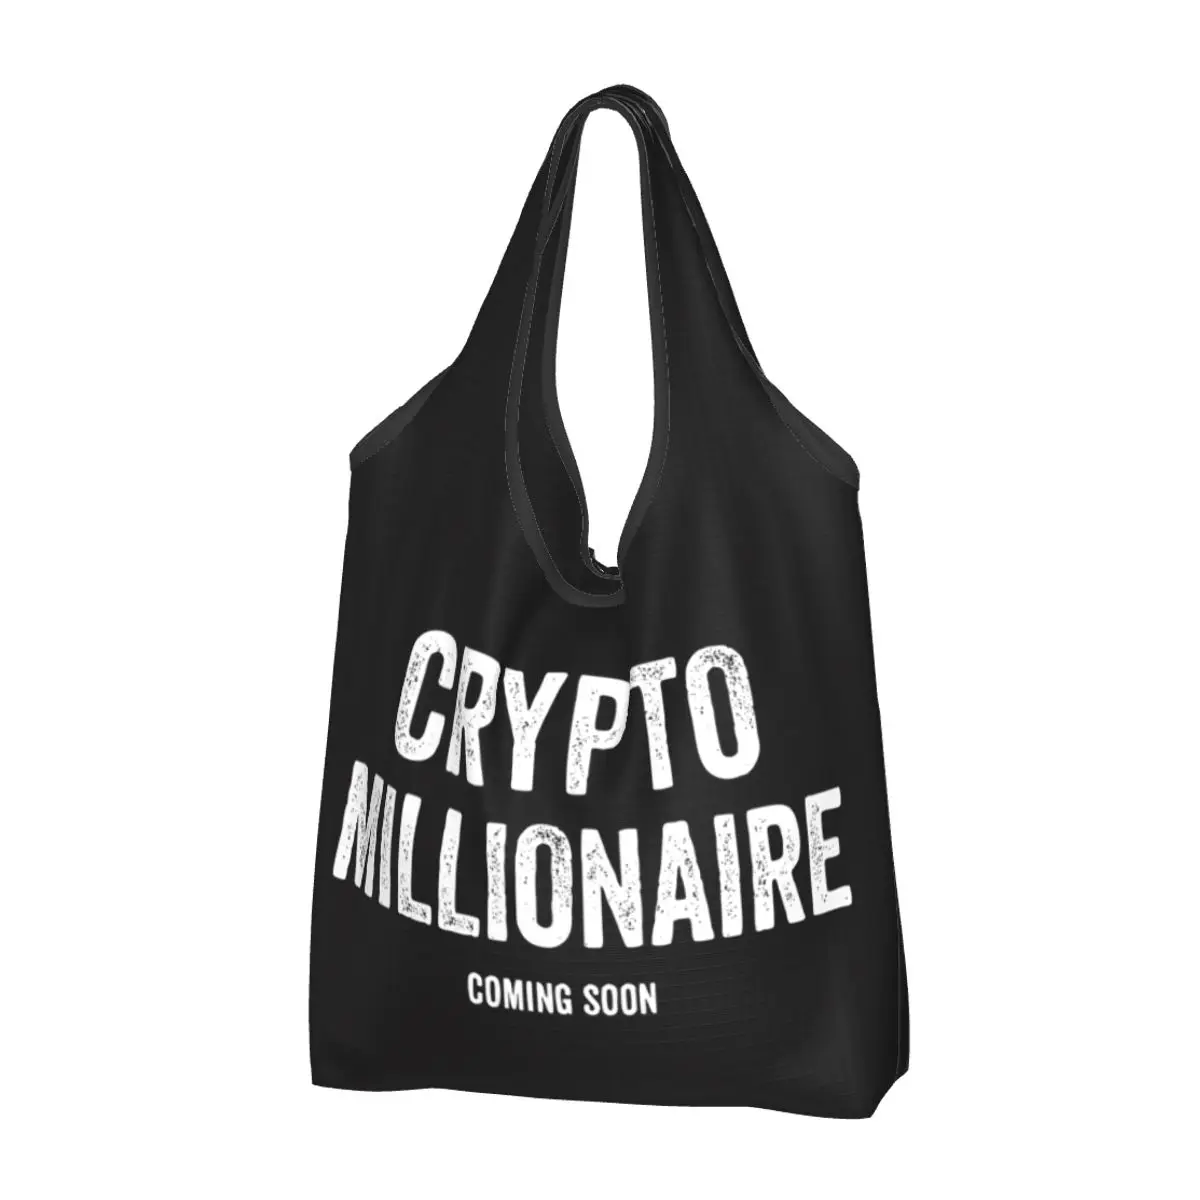 Продуктовая сумка Crypto Millionaire, складываемая в машине, сумка для покупок с блокчейном Bitcoin, Ethereum, Btc, сумка для хранения